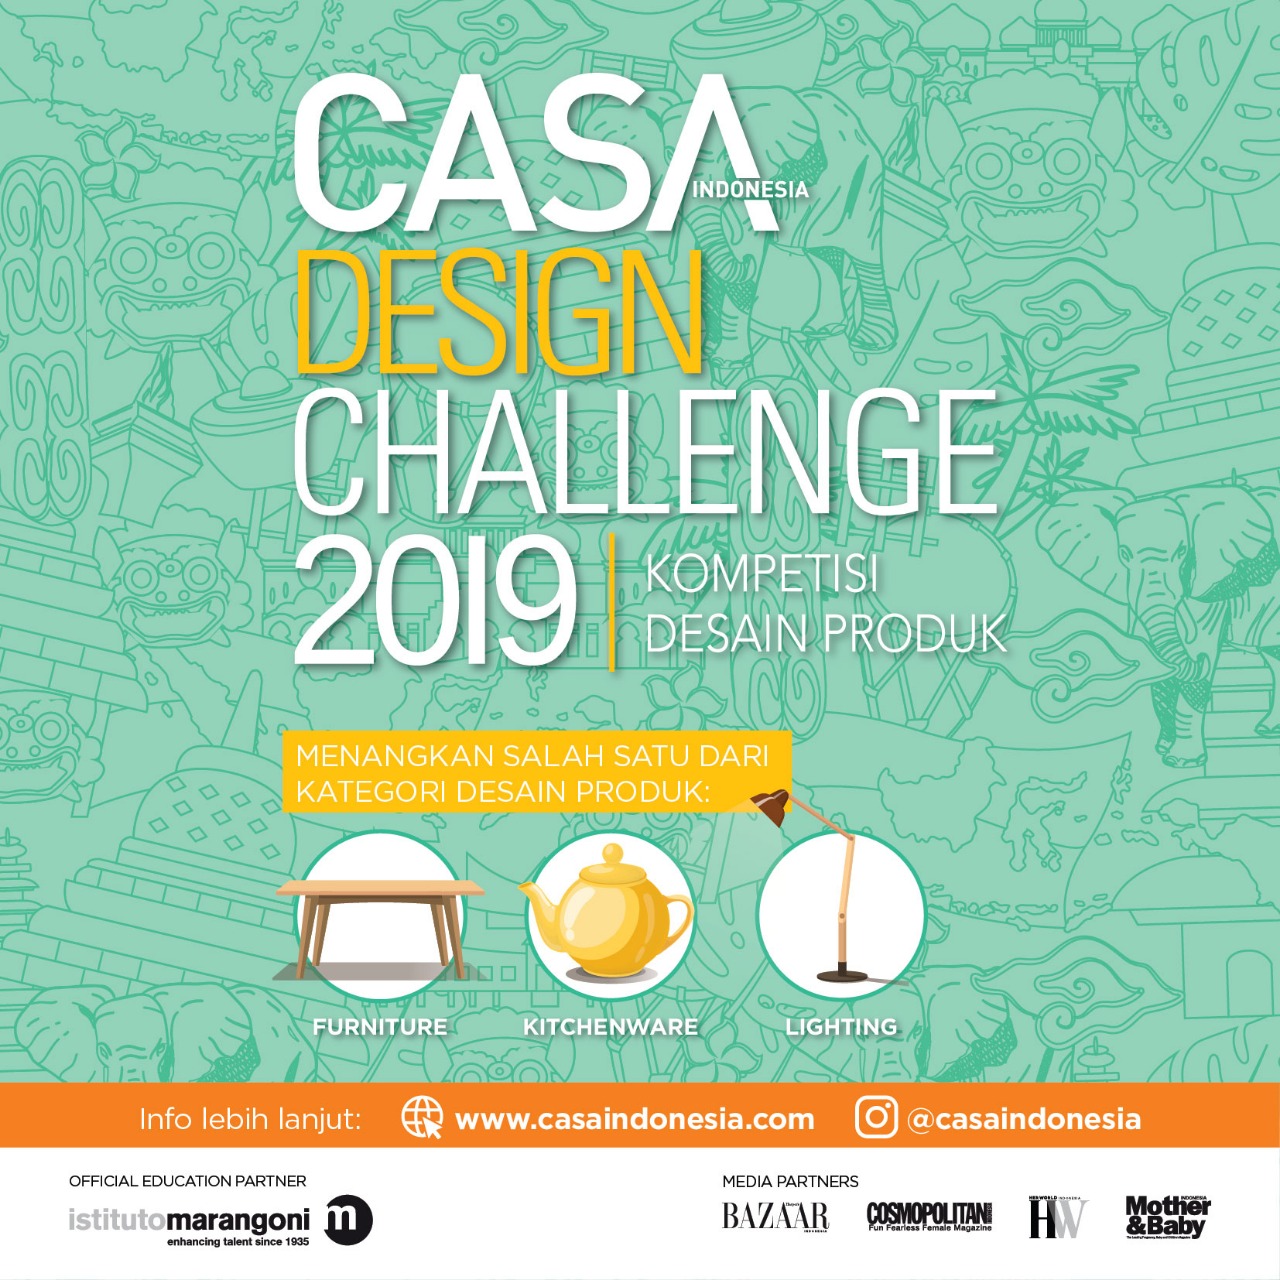 CASA DESIGN CHALLENGE 2019 